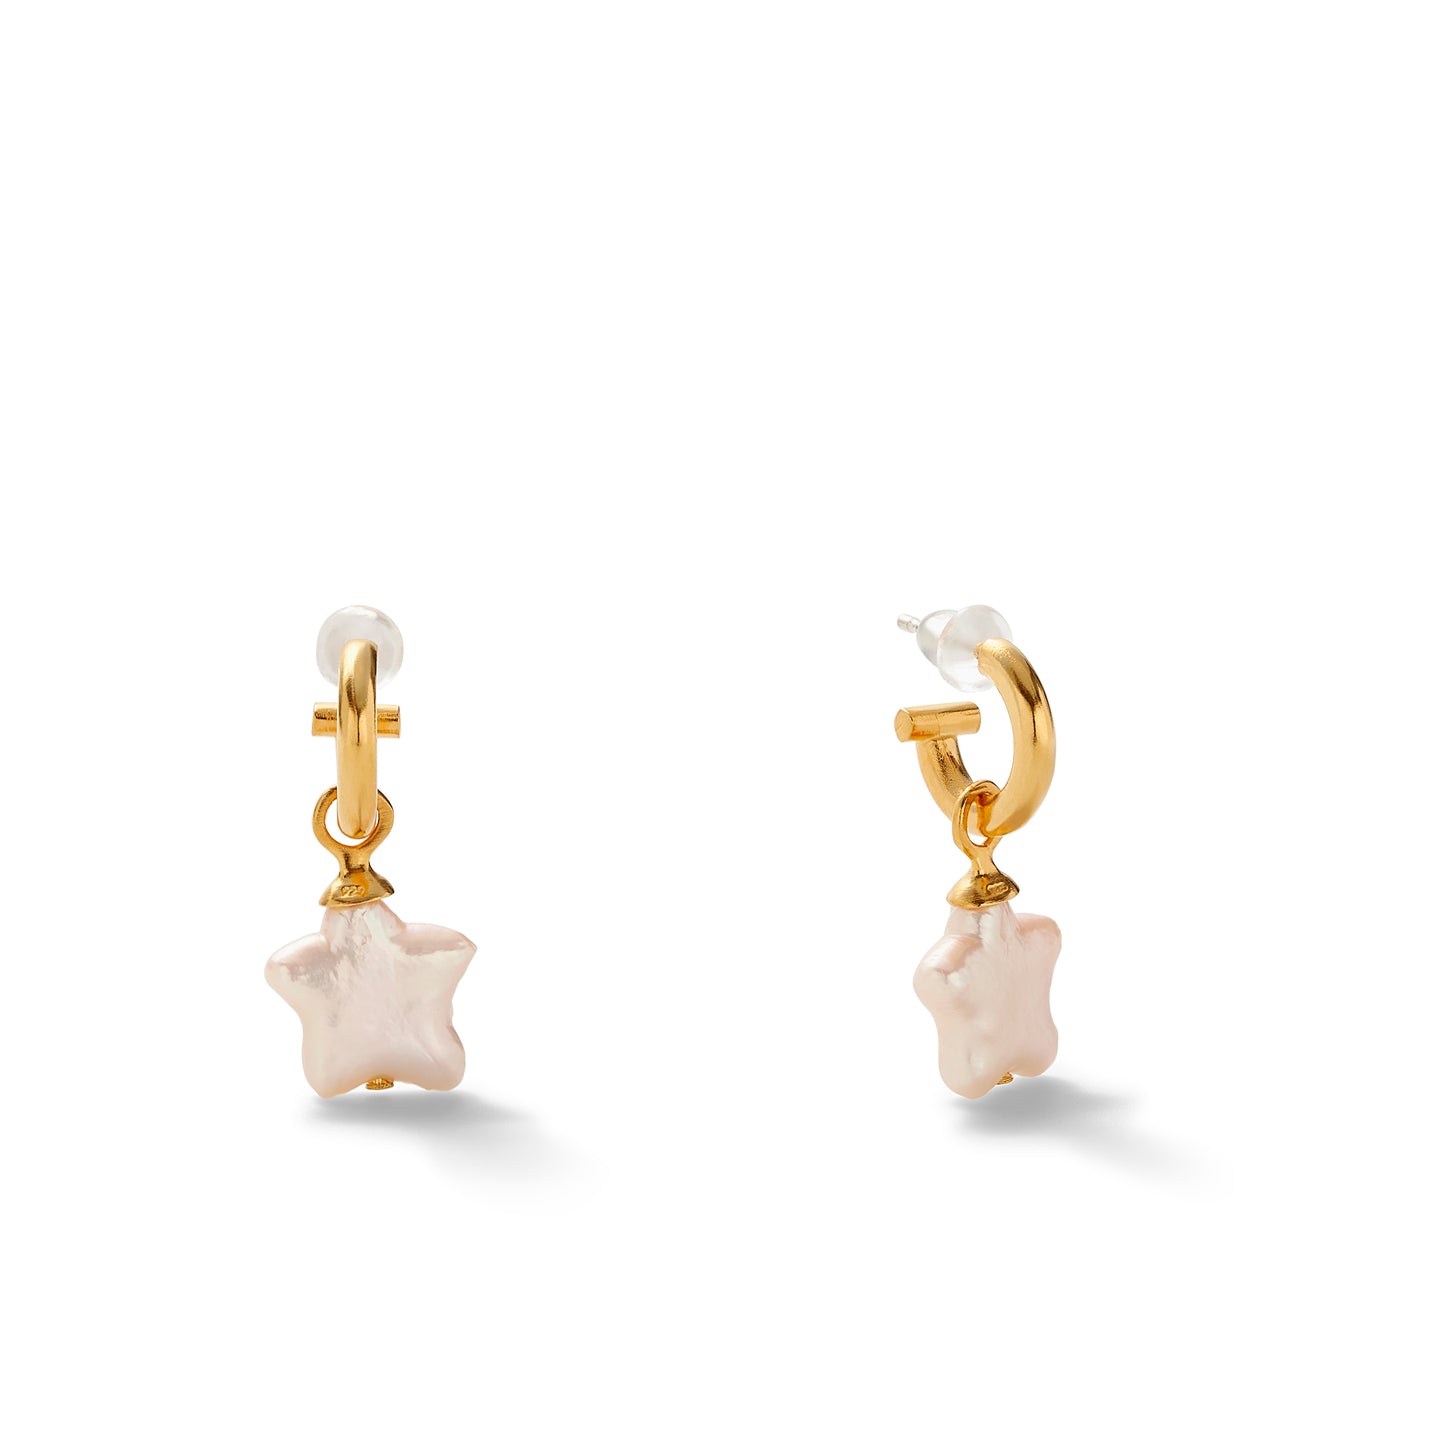 Starry Pearls hoops earrings